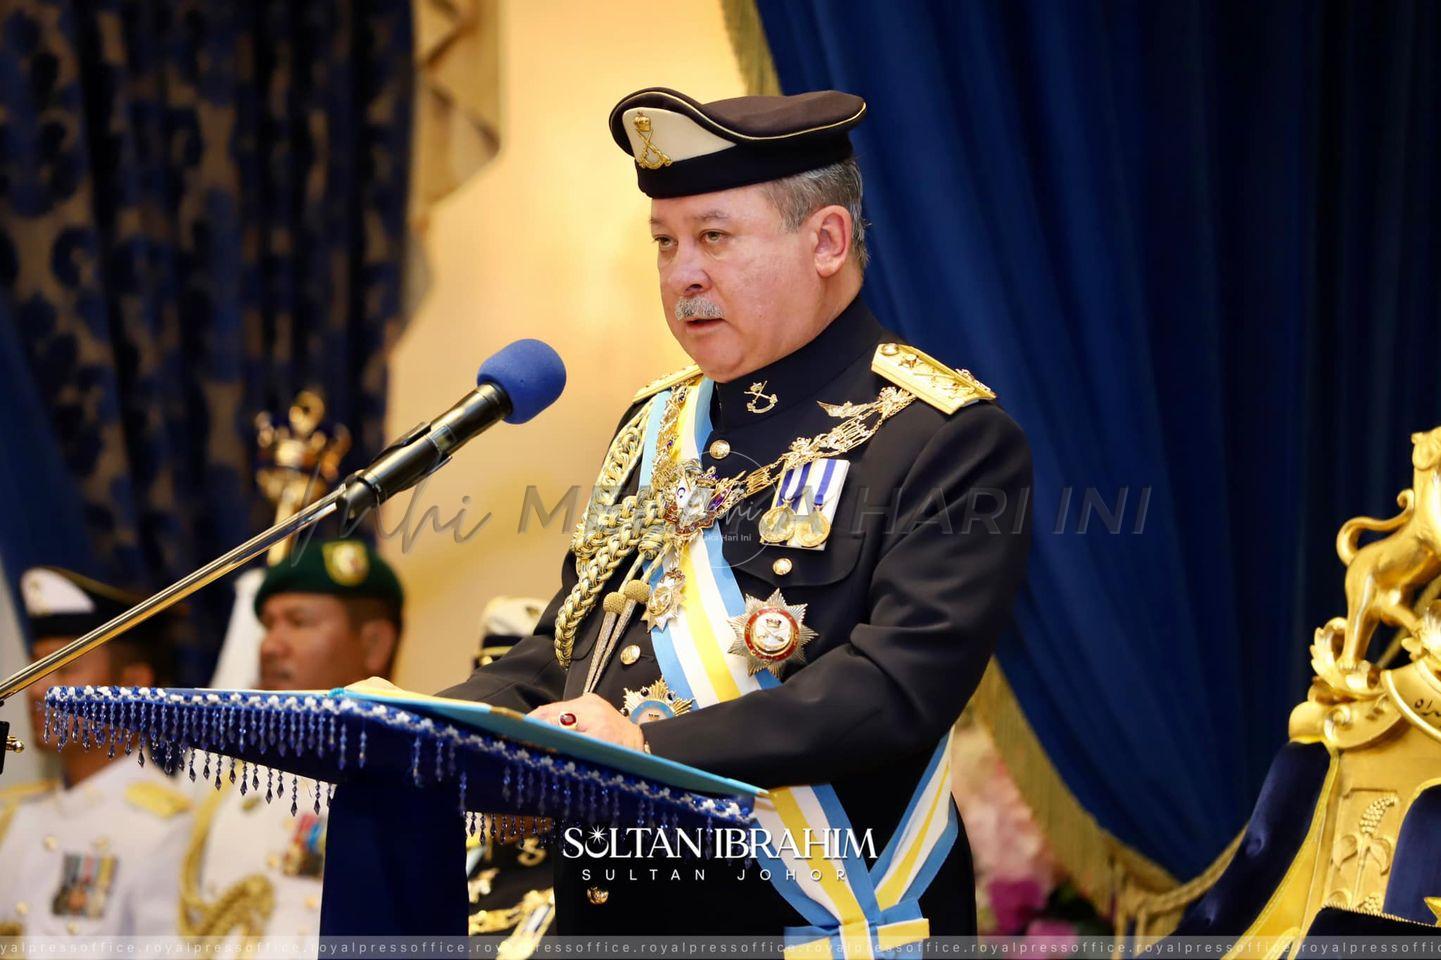 Sultan Johor zahir kekecewaan berlaku perebutan kuasa tatkala rakyat susah